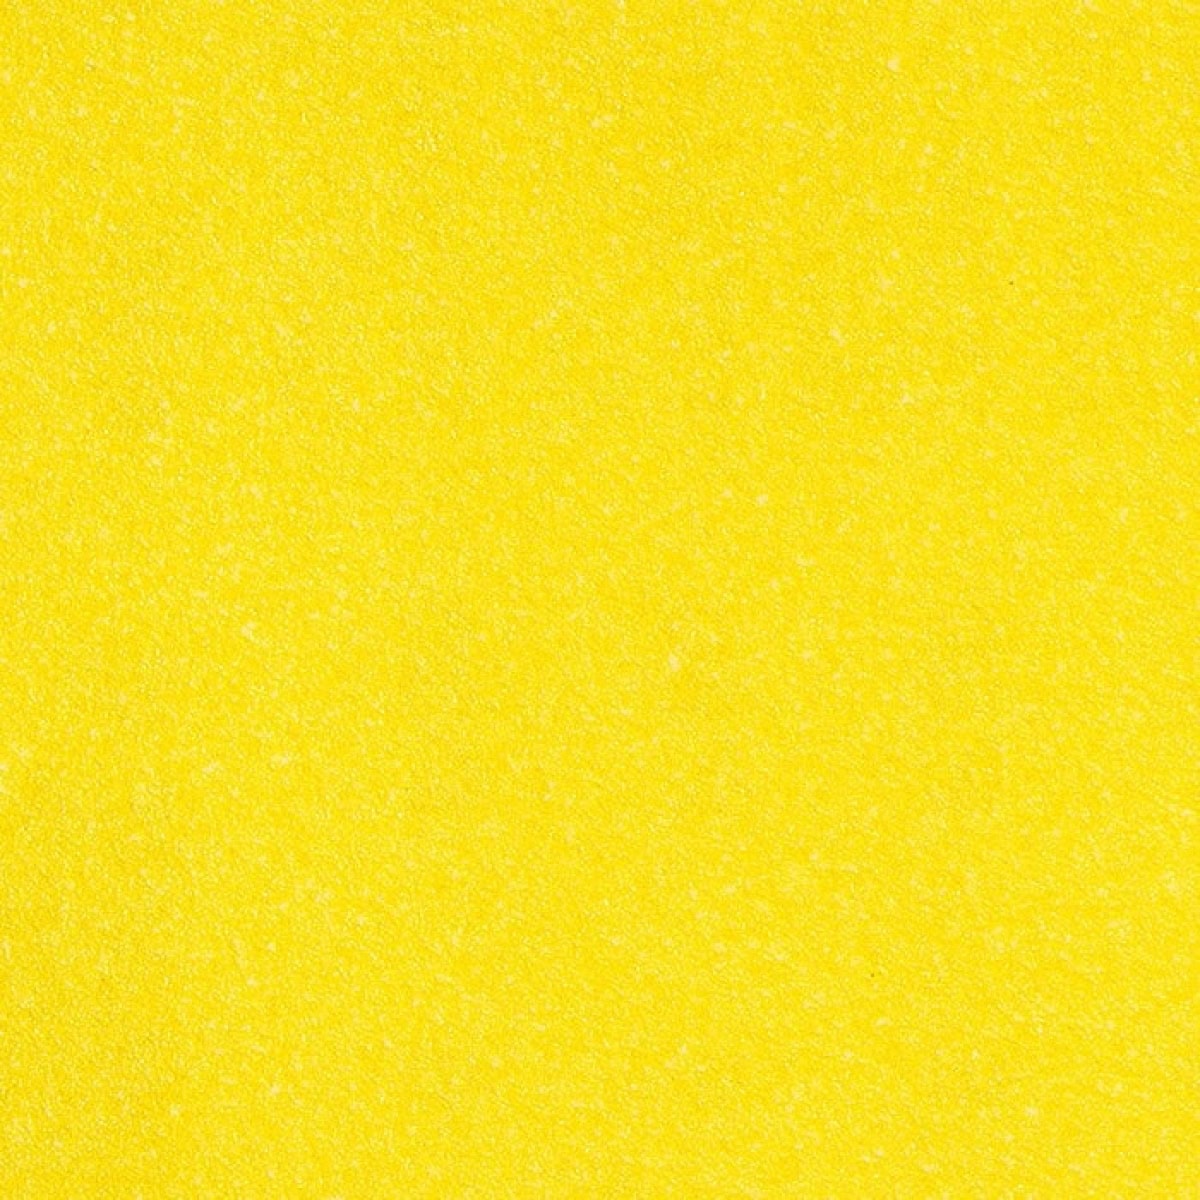 Mirka® Yellow Abrasive Soft 1674802540, Ø 225 mm, P40, A, 27-fach gelocht, Kletthaftend, Schleifscheibe mit Aluminiumoxidkorn, Für Finish- und Polierarbeiten an Werkstücken